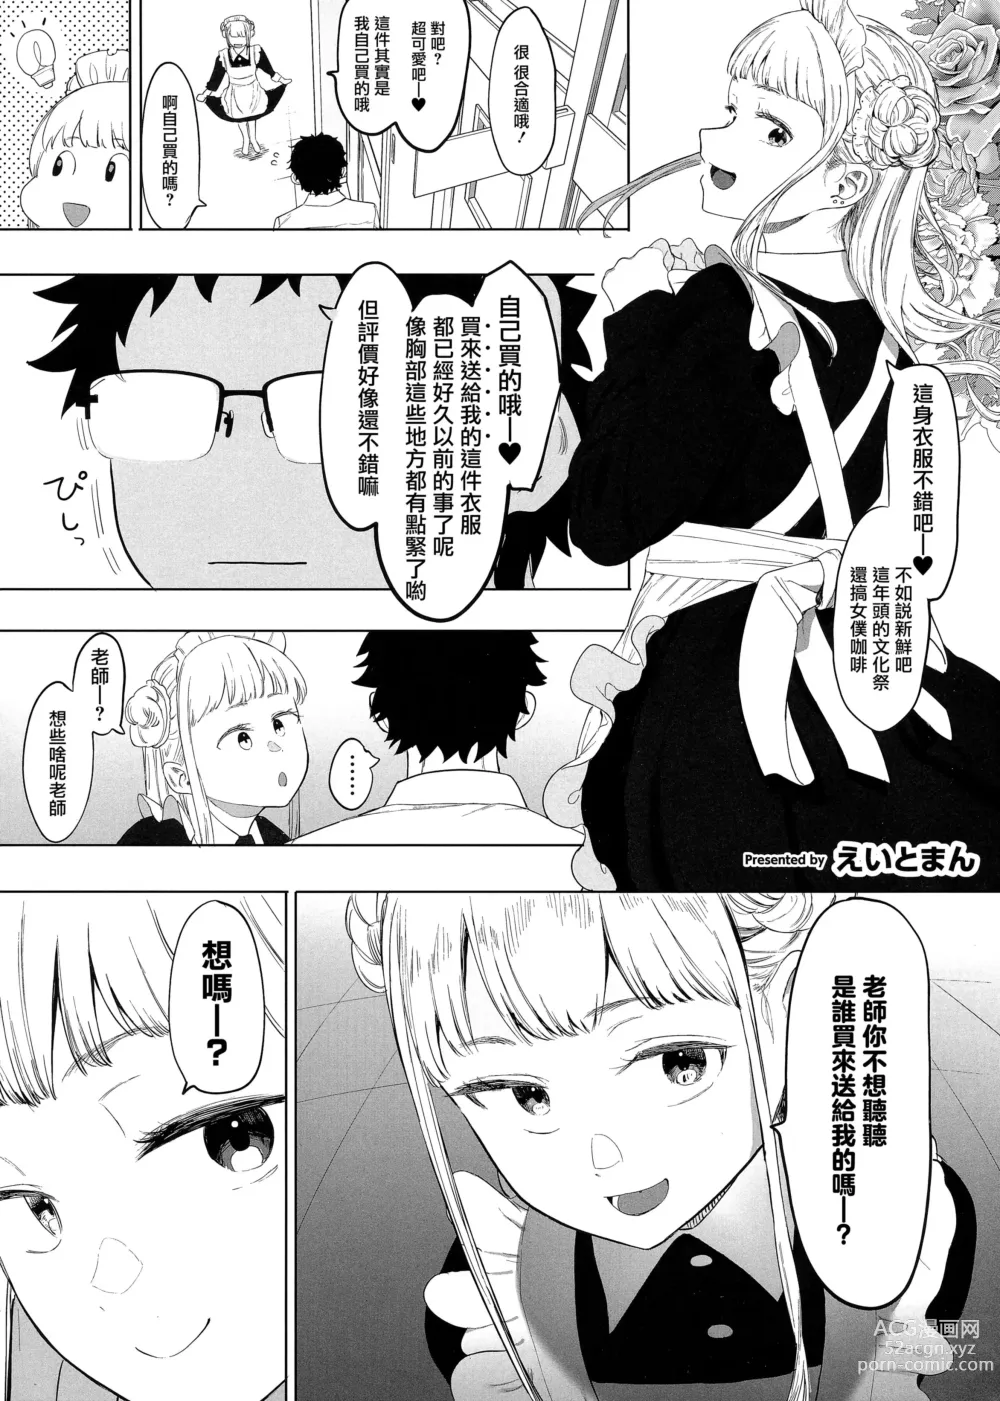 Page 2 of manga Untitled